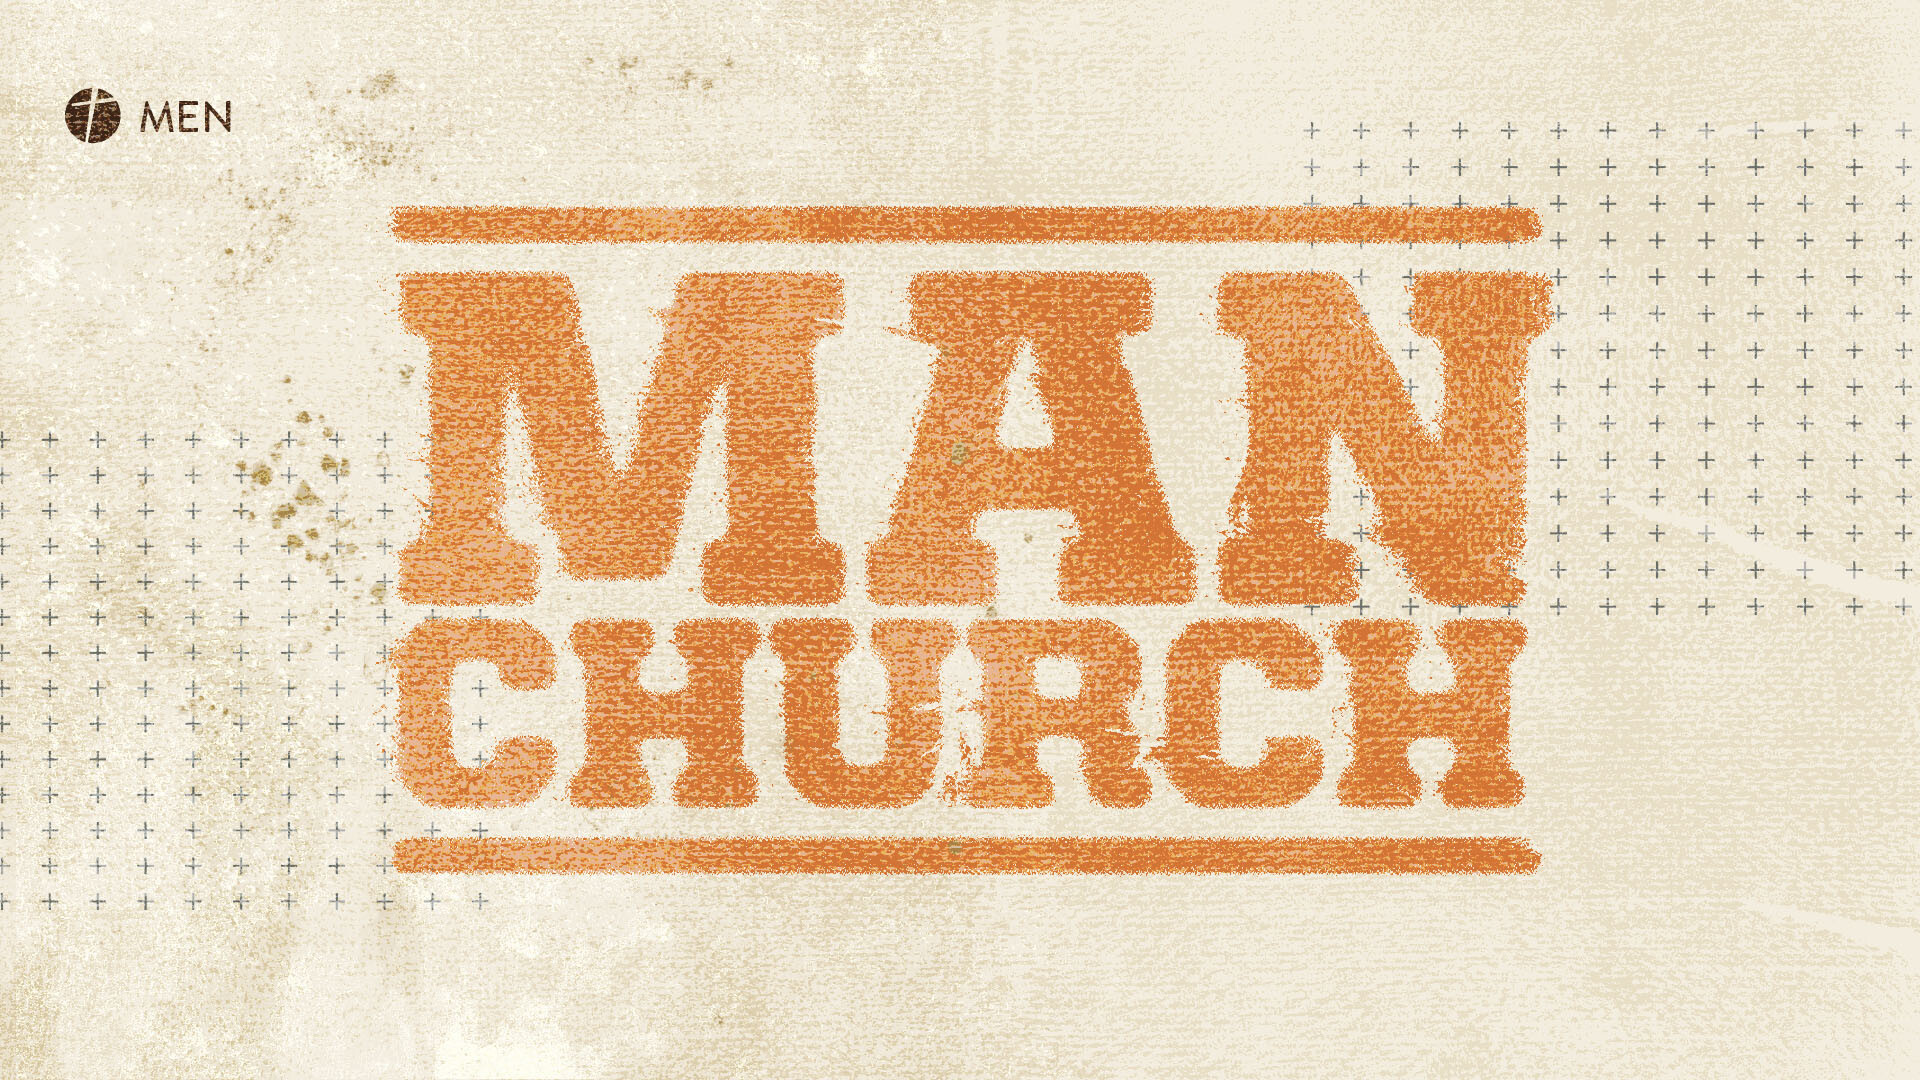 Man Church